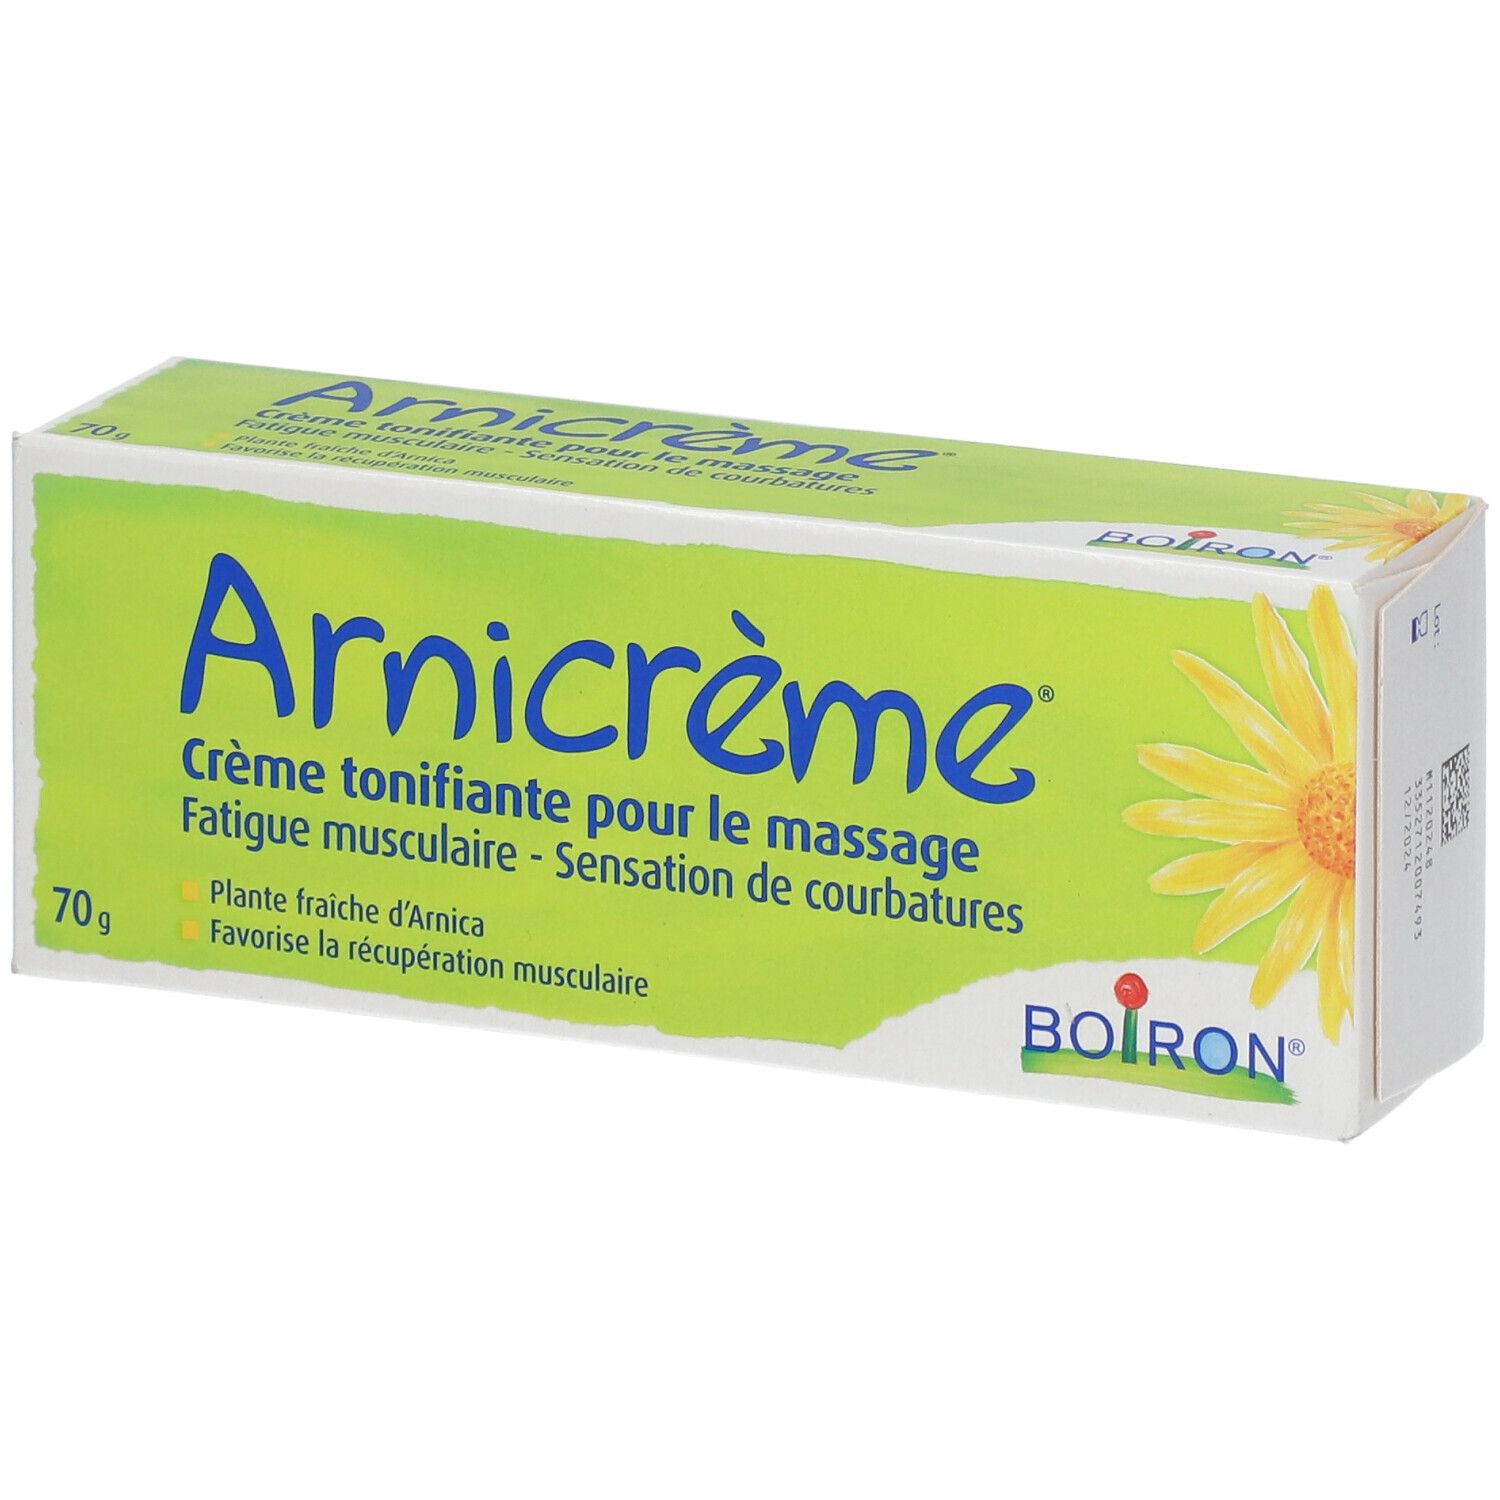 Boiron® Arnicrème